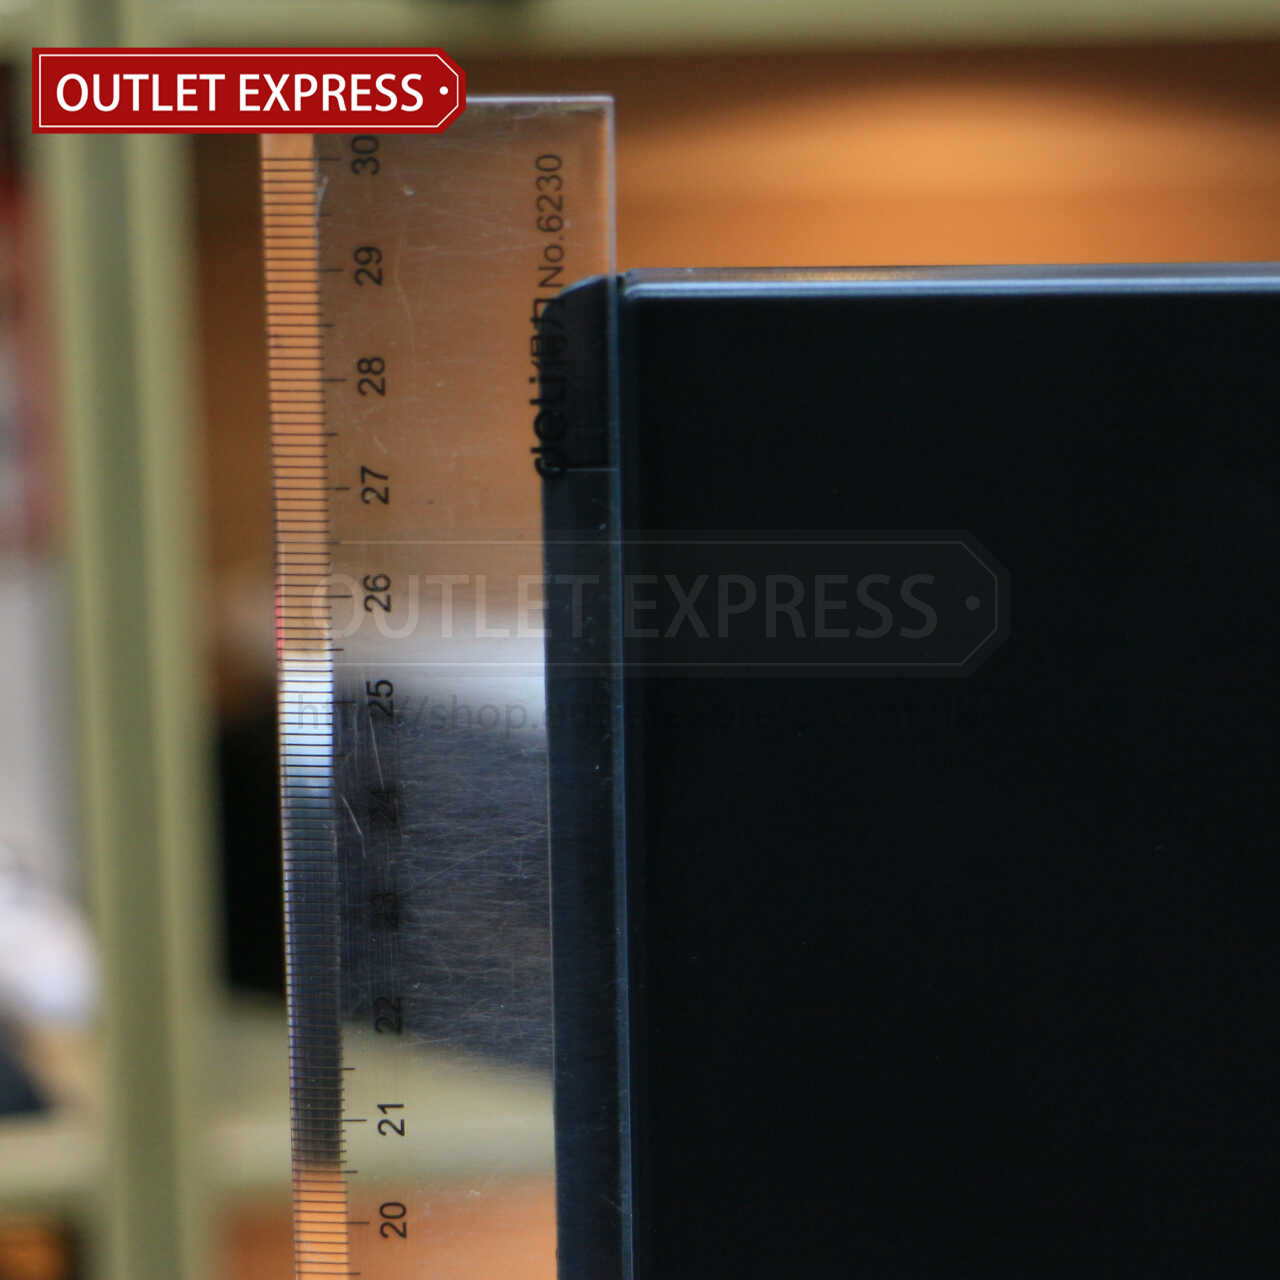 三面折疊觸摸感應LED化妝鏡-高度 Outlet Express HK生活百貨城實拍相片